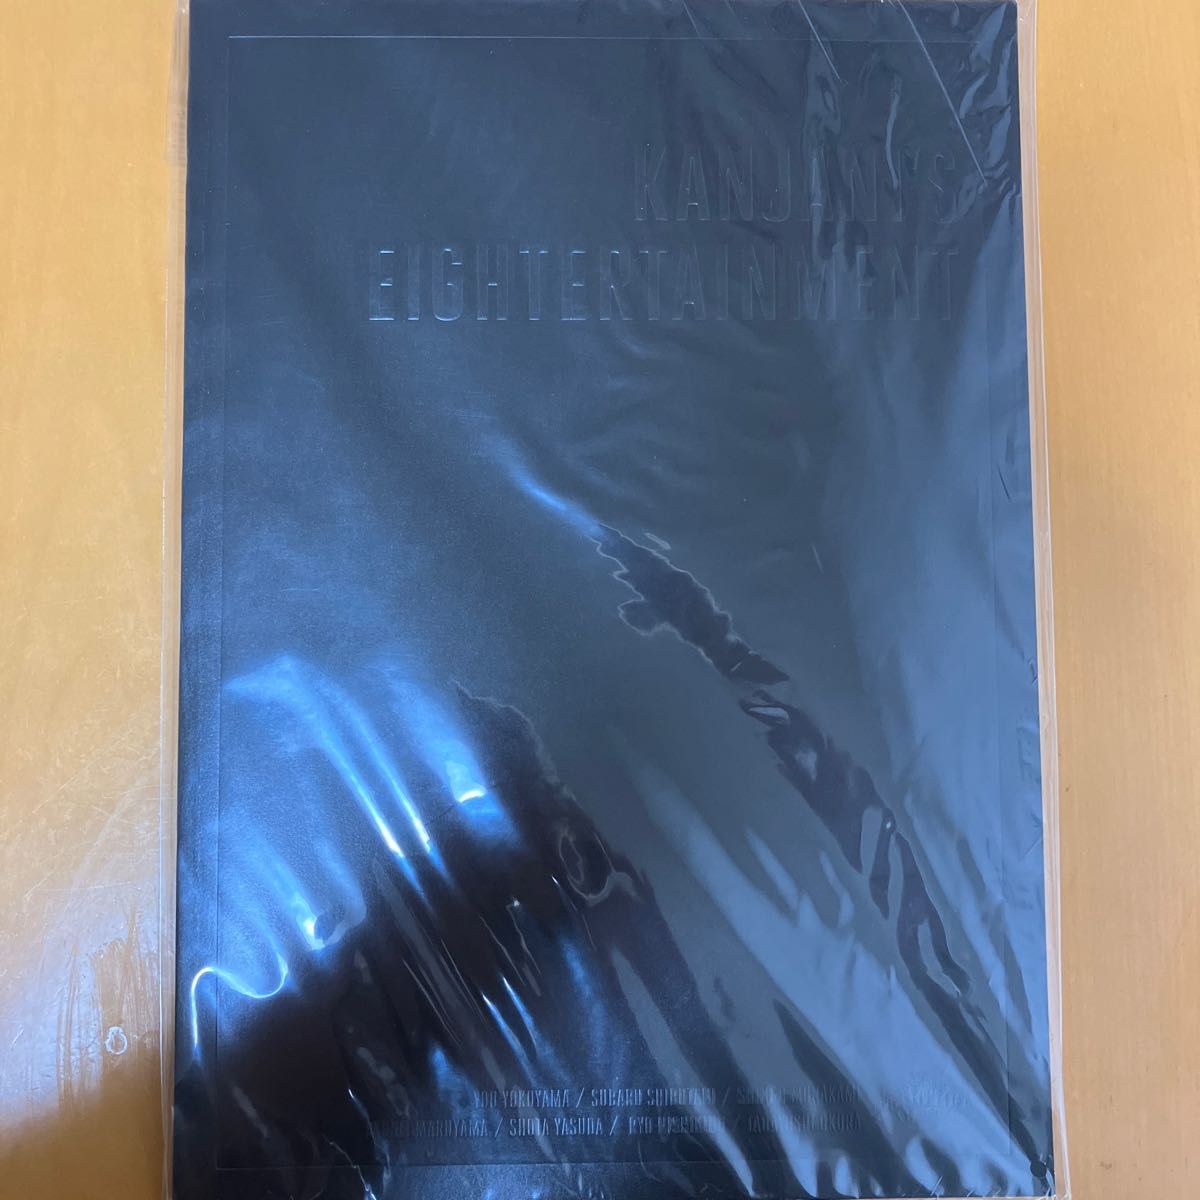 【即購入可】関ジャニ∞ KANJANI’S EIGHTERTAINMENTツアーパンフレット